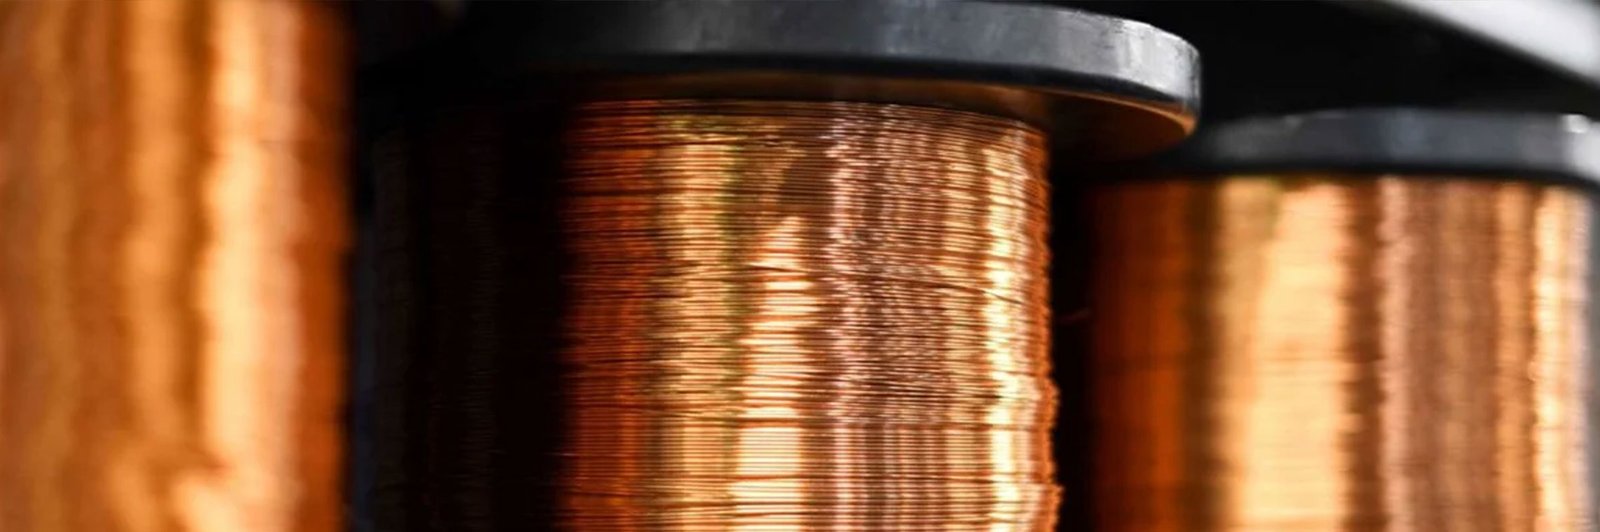 Copper-2